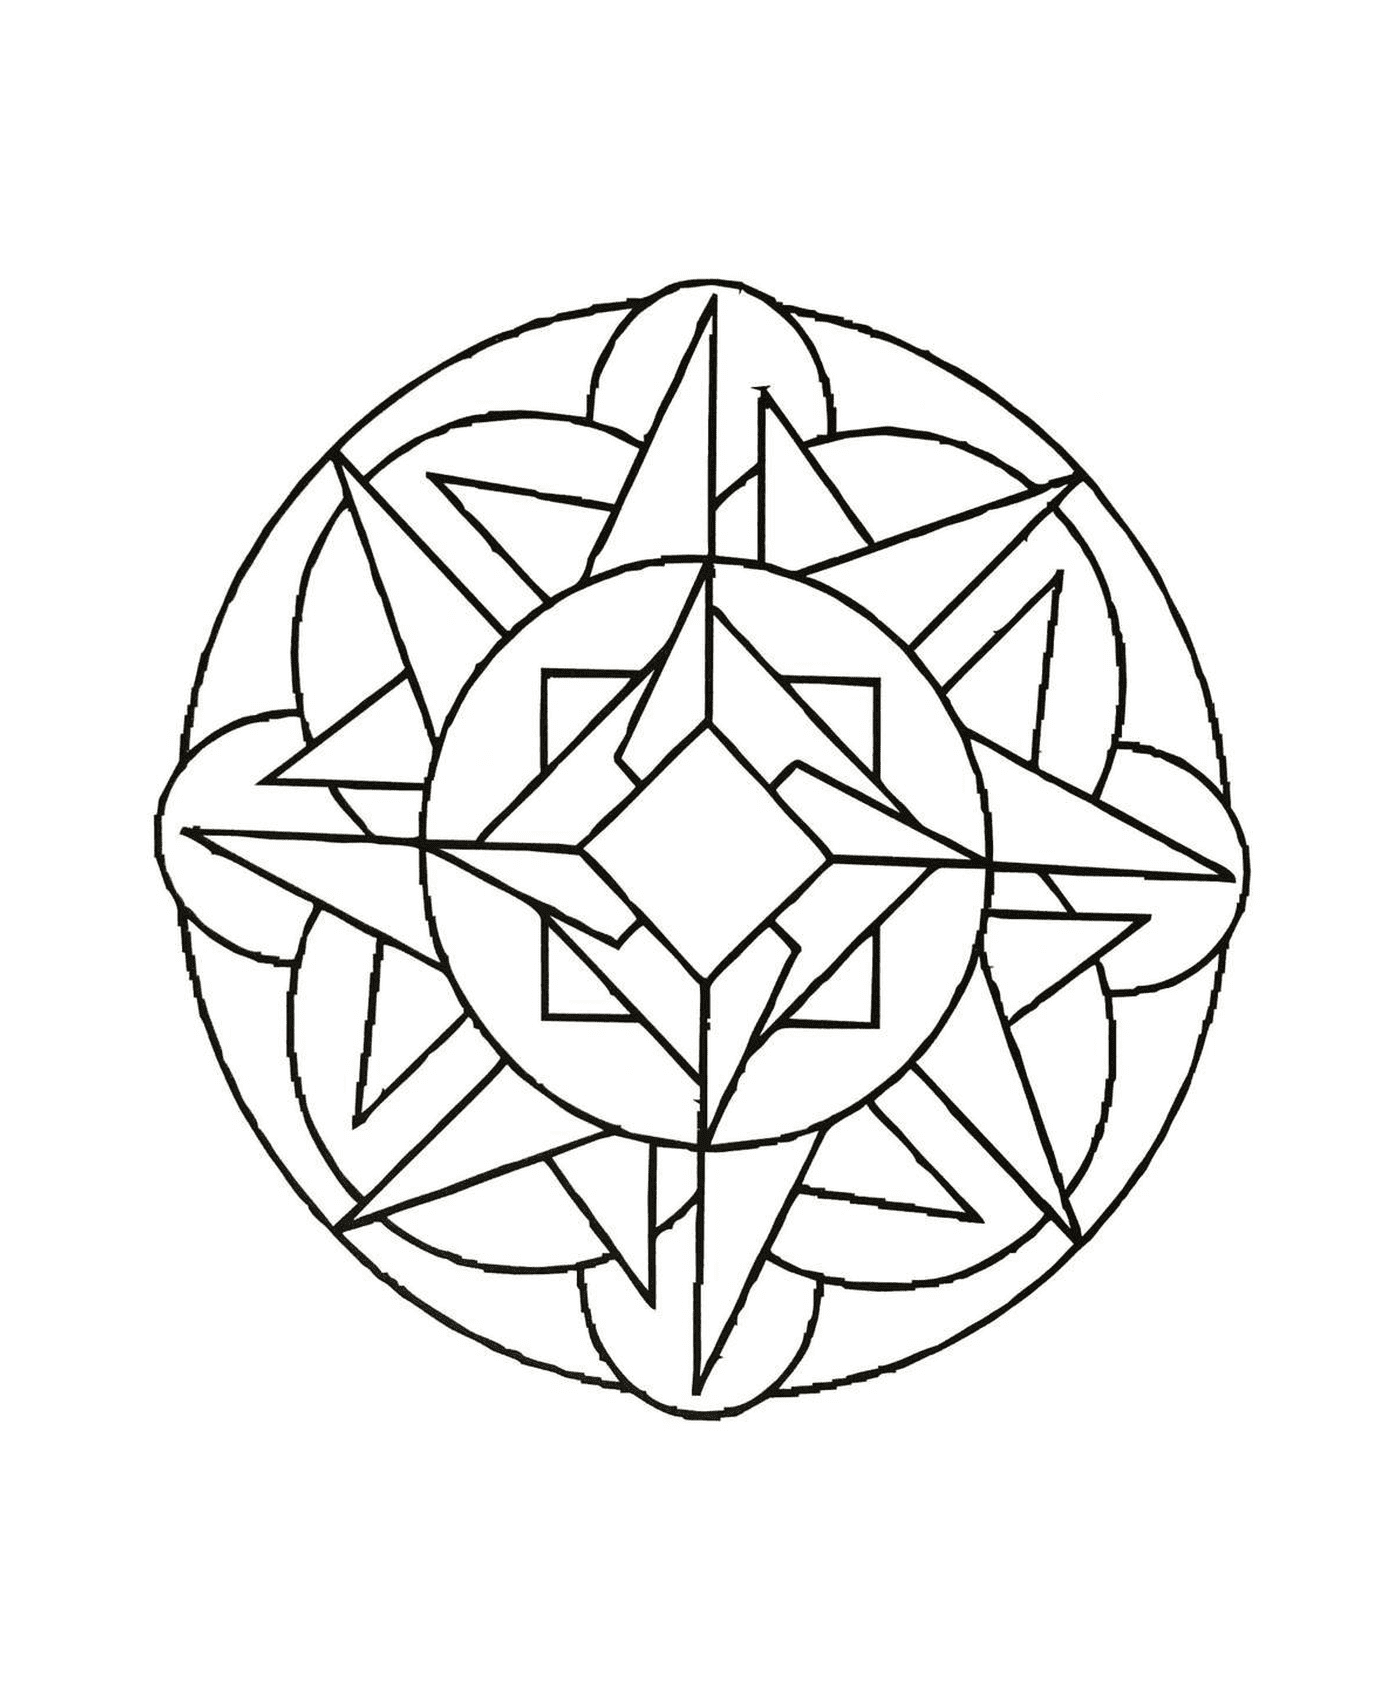  Ausgearbeitete geometrische Mandala 